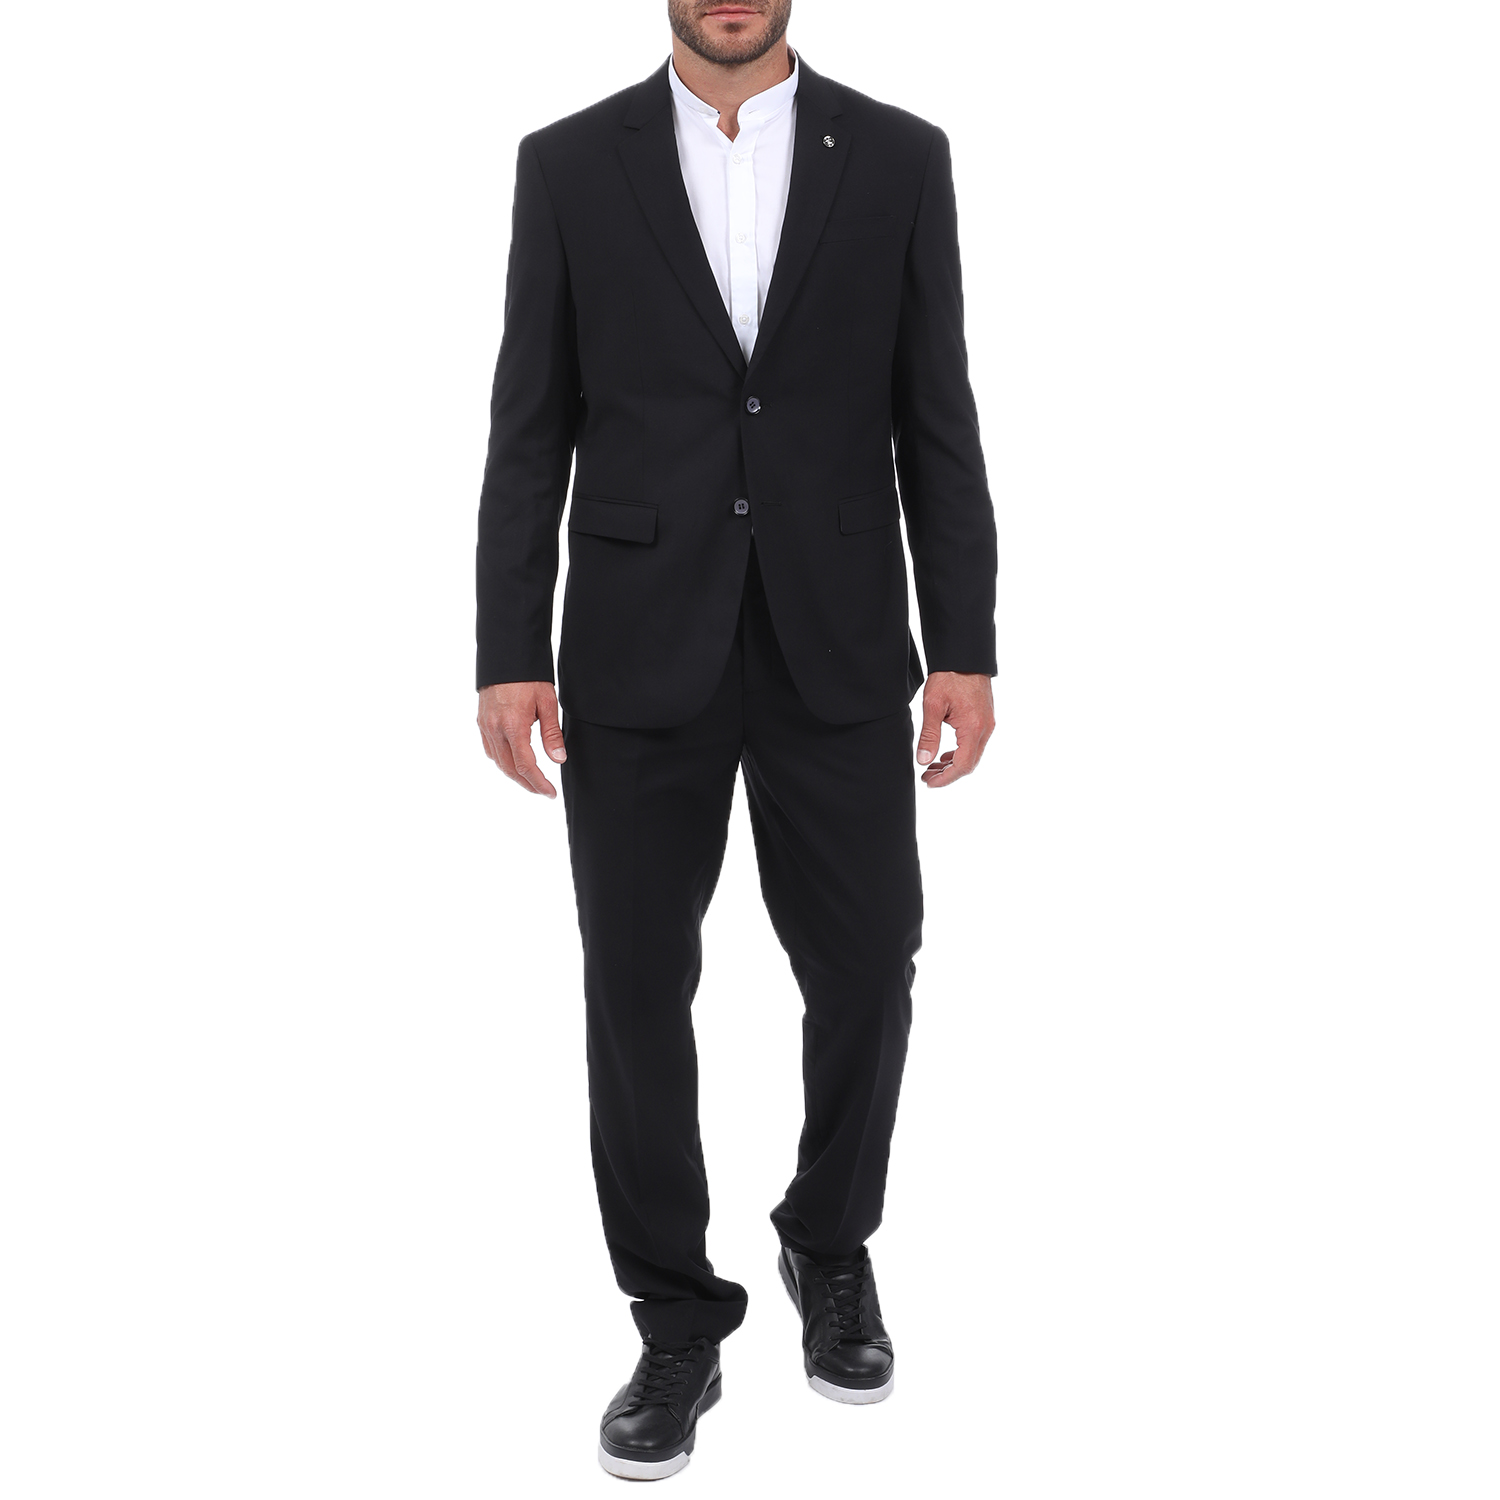 Ανδρικά/Ρούχα/Πανωφόρια/Σακάκια MARTIN & CO - Ανδρικό κοστούμι MARTIN & CO CMFRT Stretch μαύρο